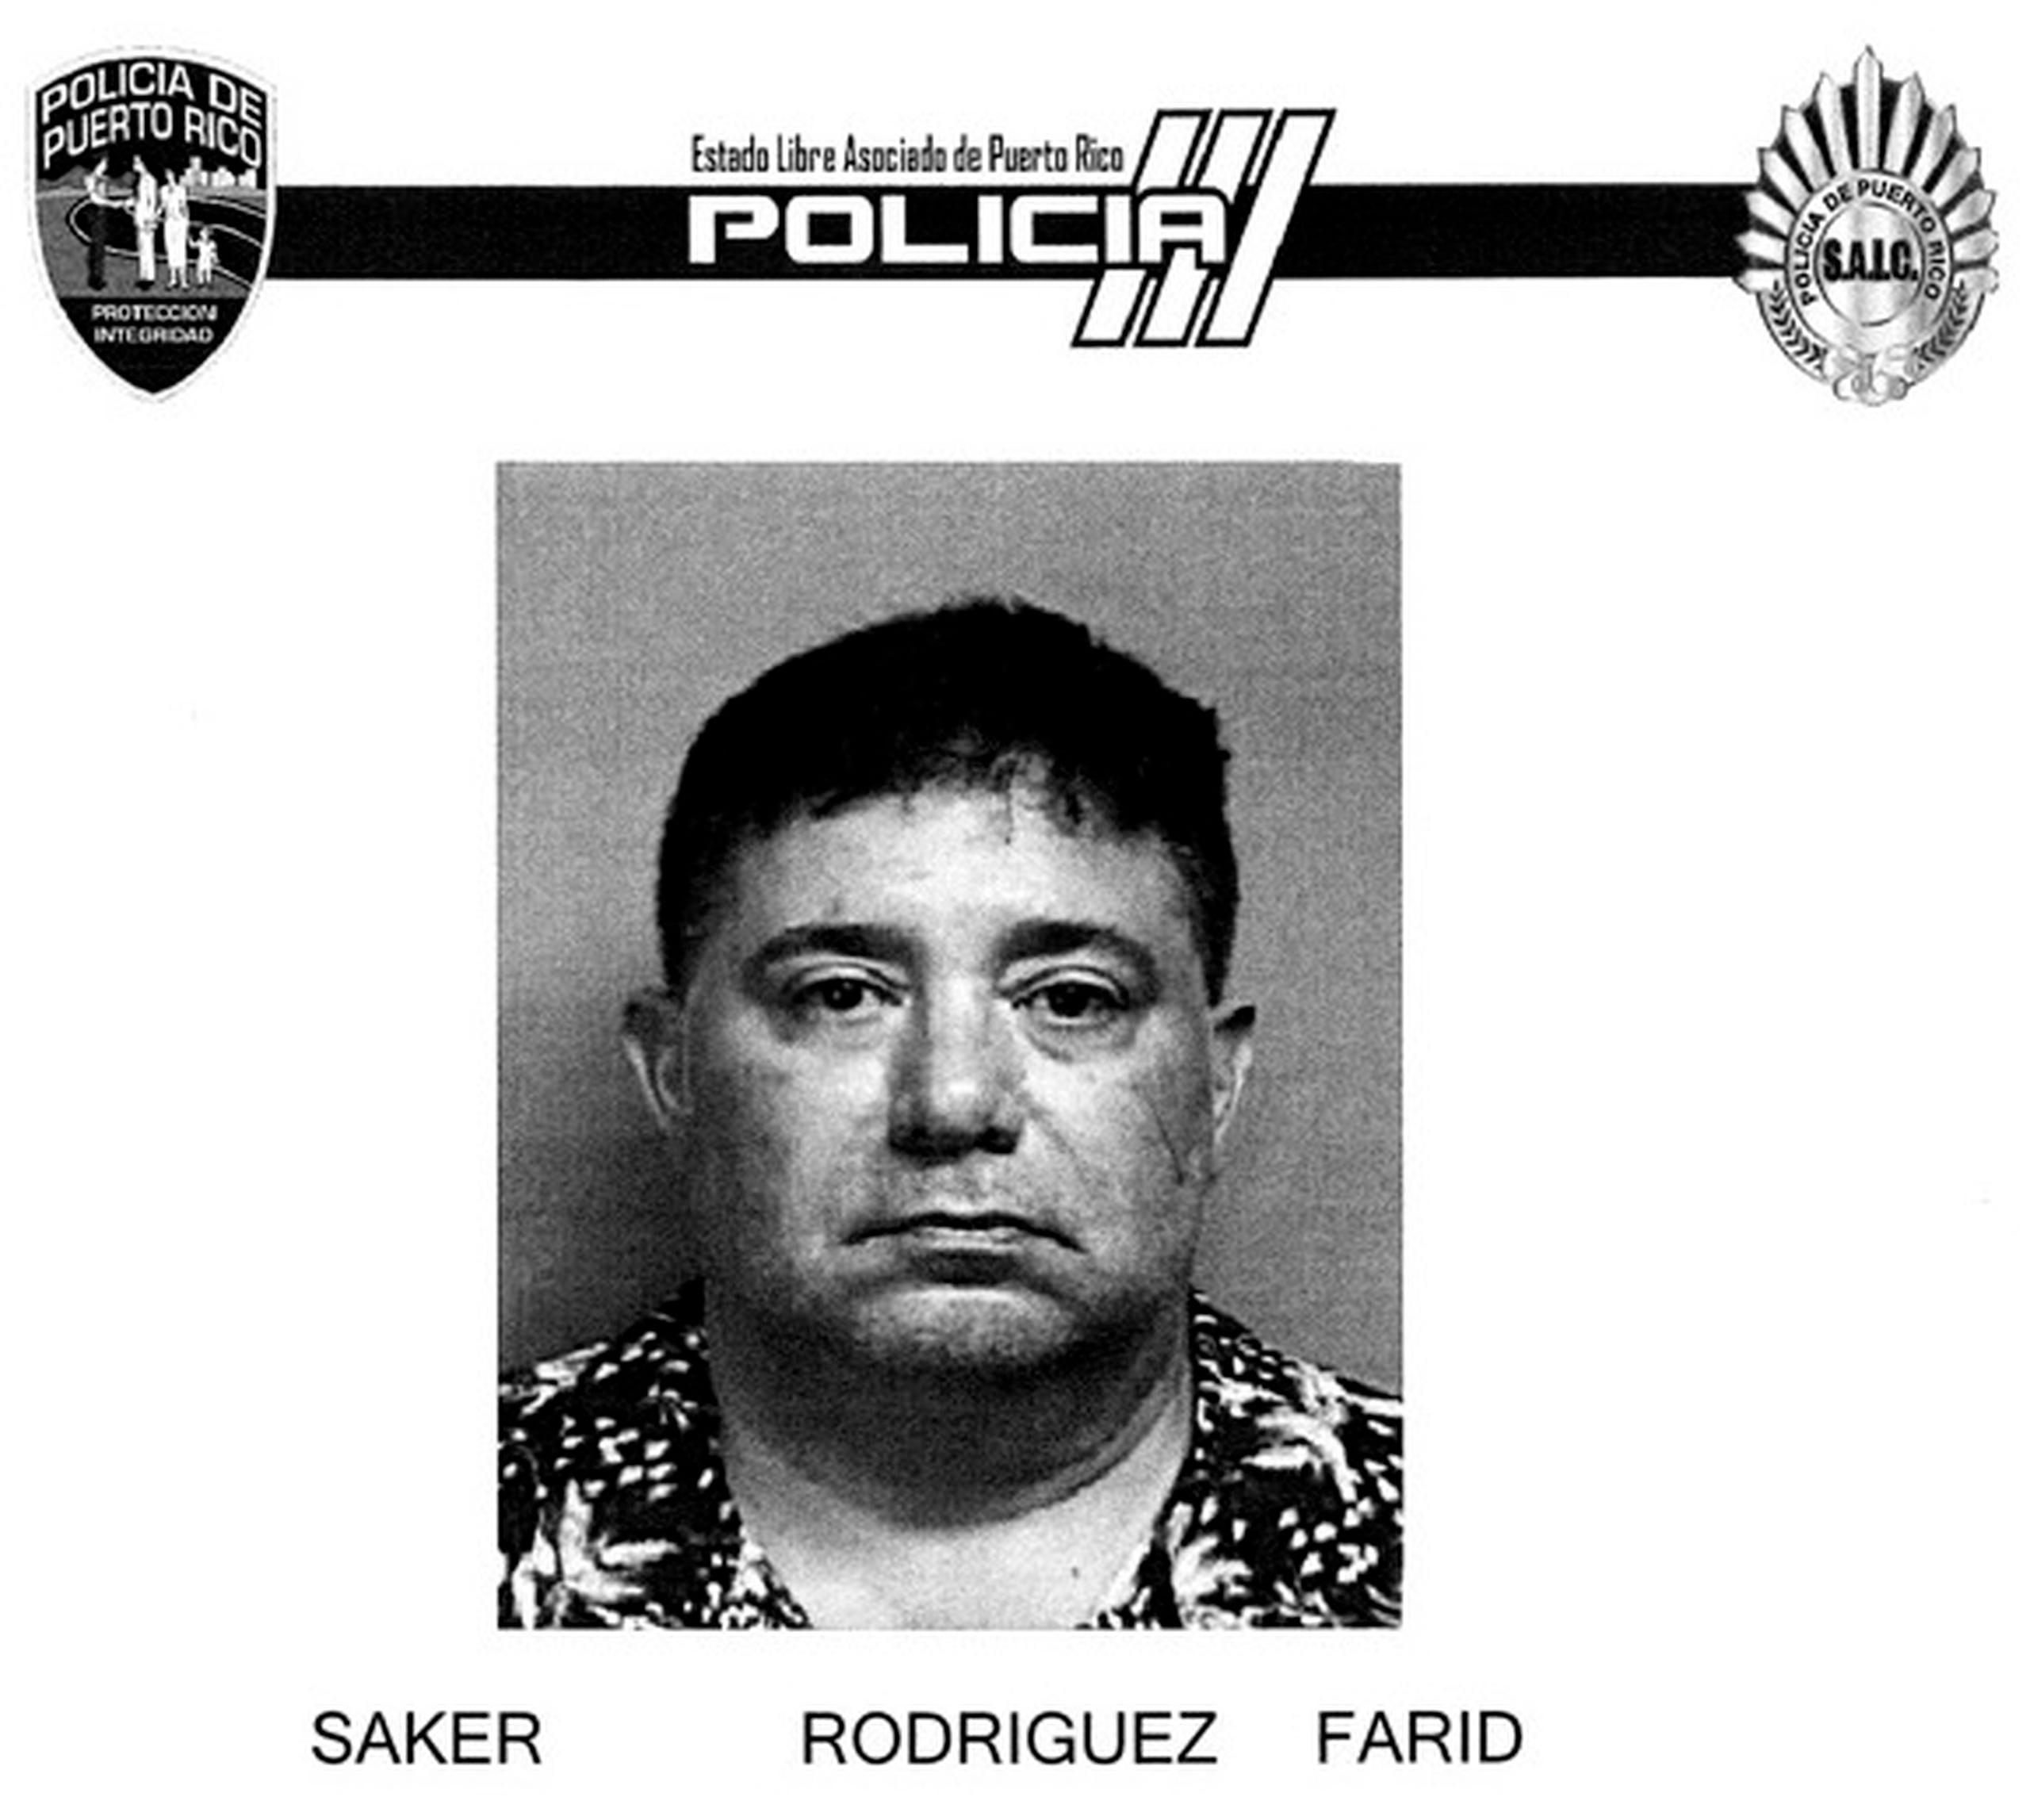 La vista preliminar contra Farid Saker Rodríguez fue pautada para noviembre.